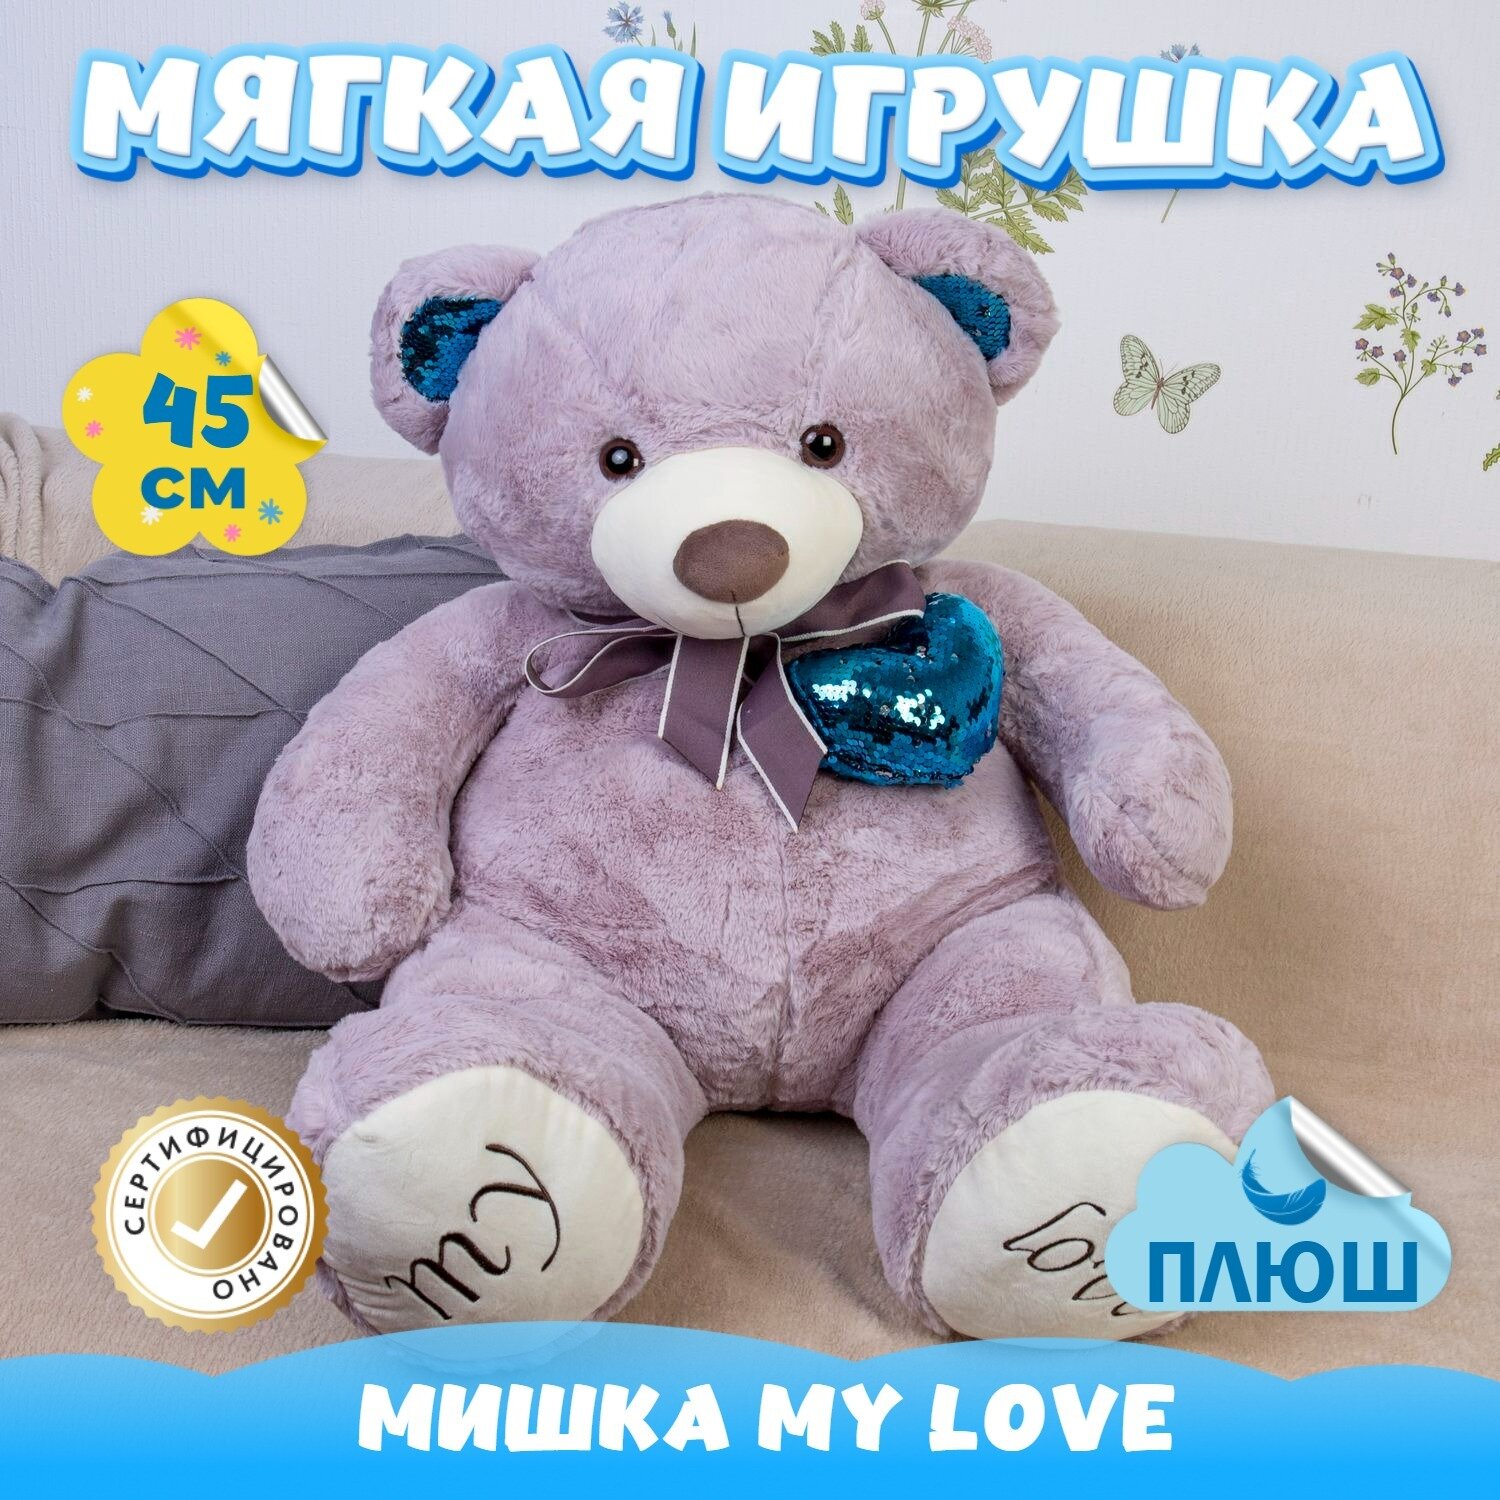 Мягкая игрушка Мишка MY LOVE с сердцем для девочек мальчиков / Плюшевый Медведь Тедди для малышей KiDWoW сиреневый 45см